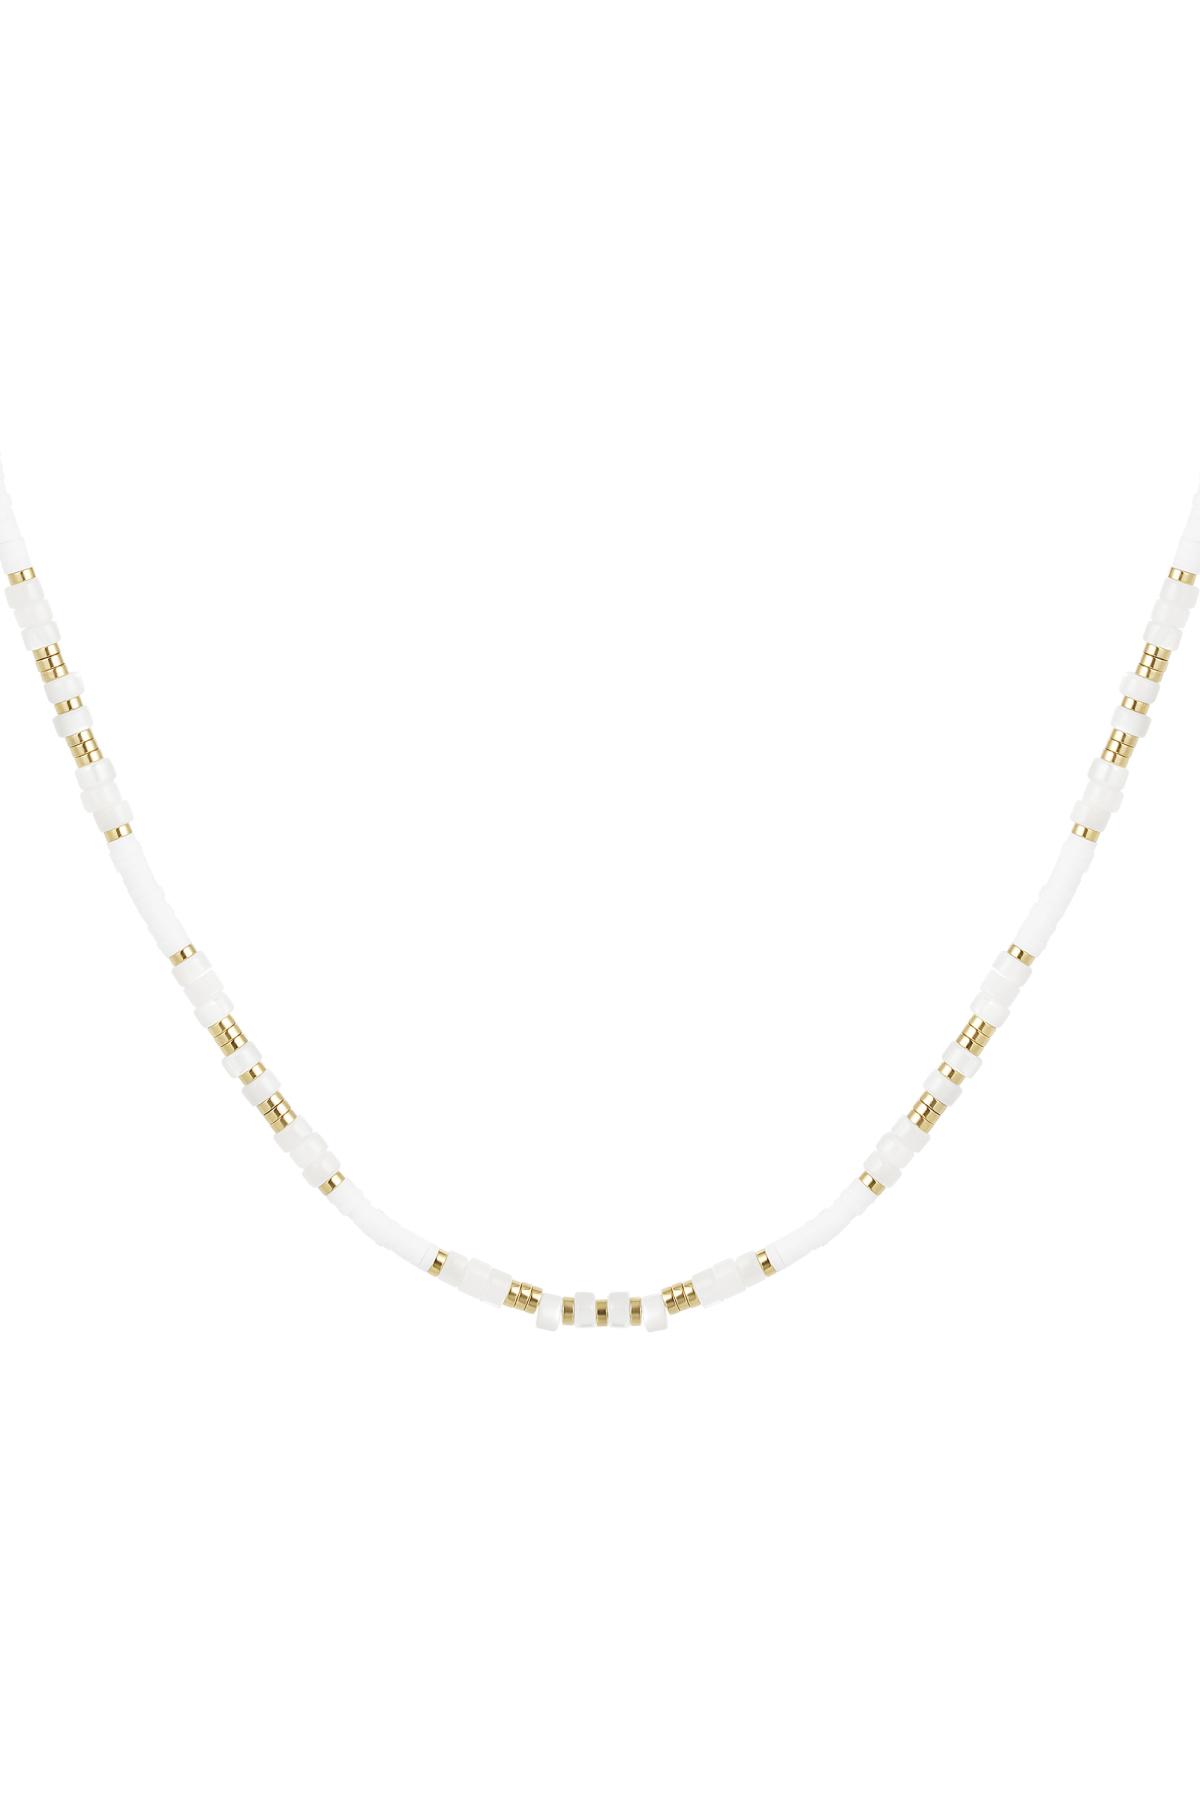 Bead chain color White Hematite